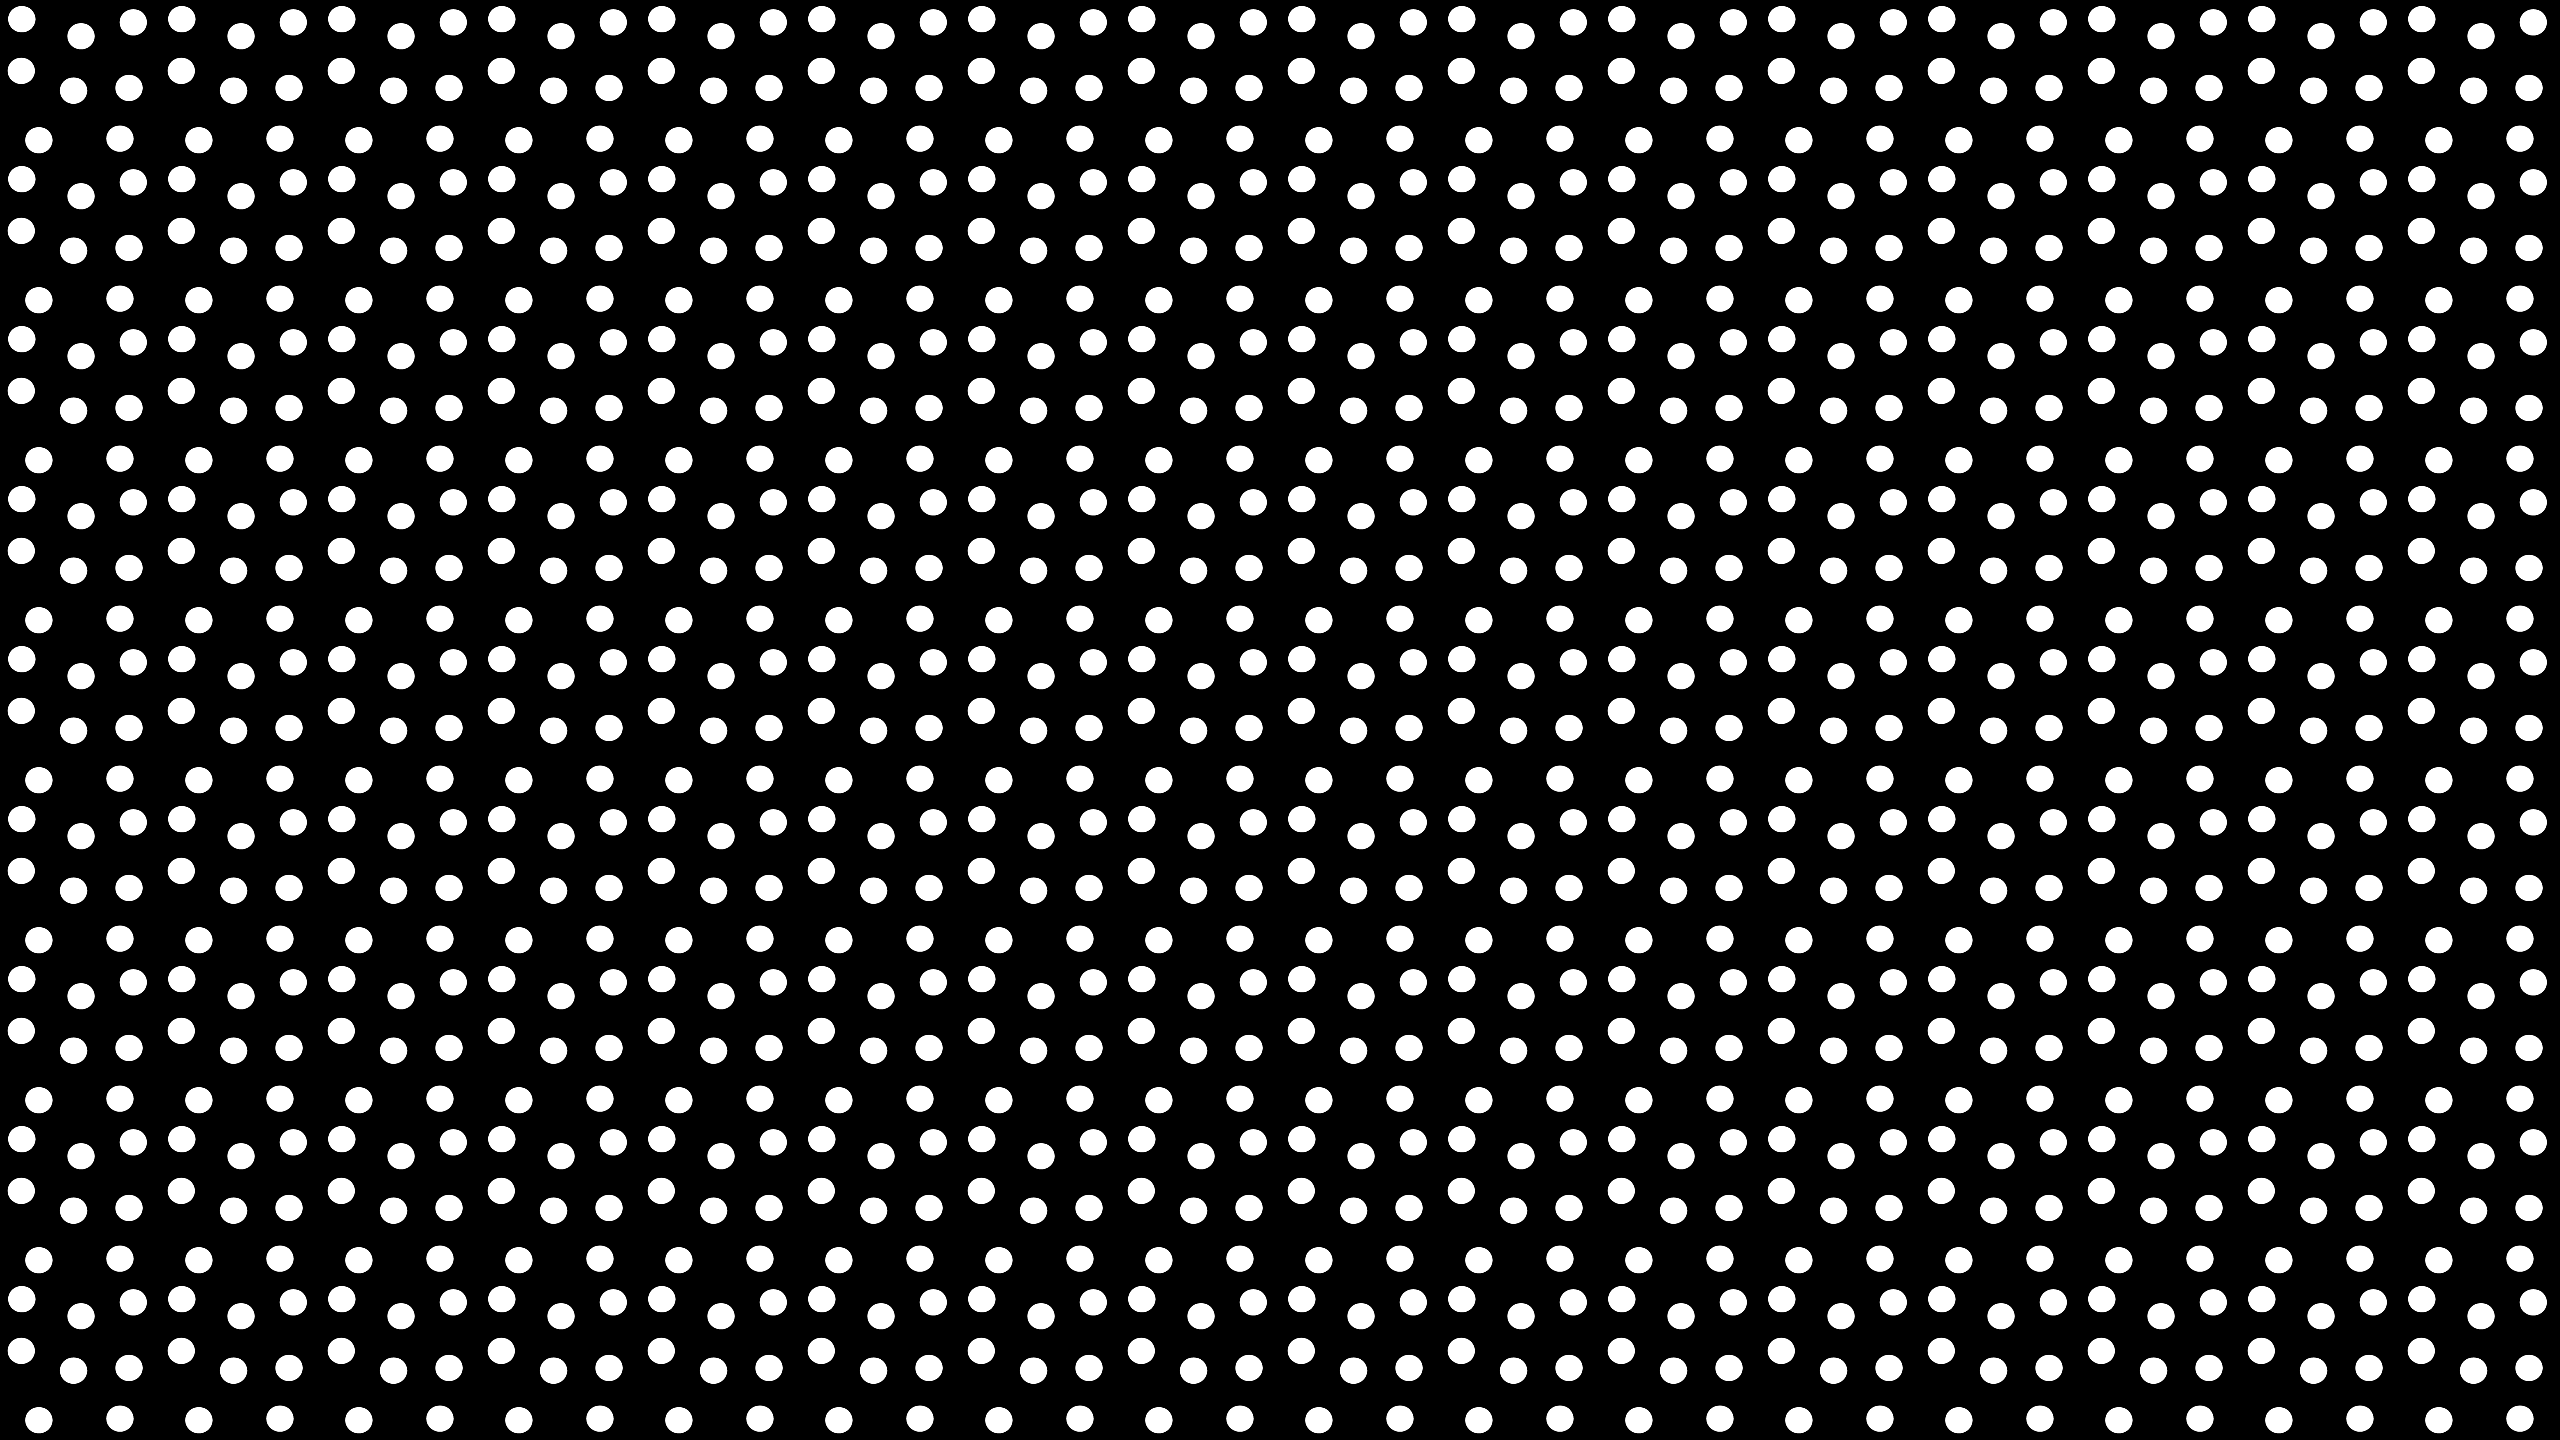 45+] Black Polka Dot Wallpaper - WallpaperSafari